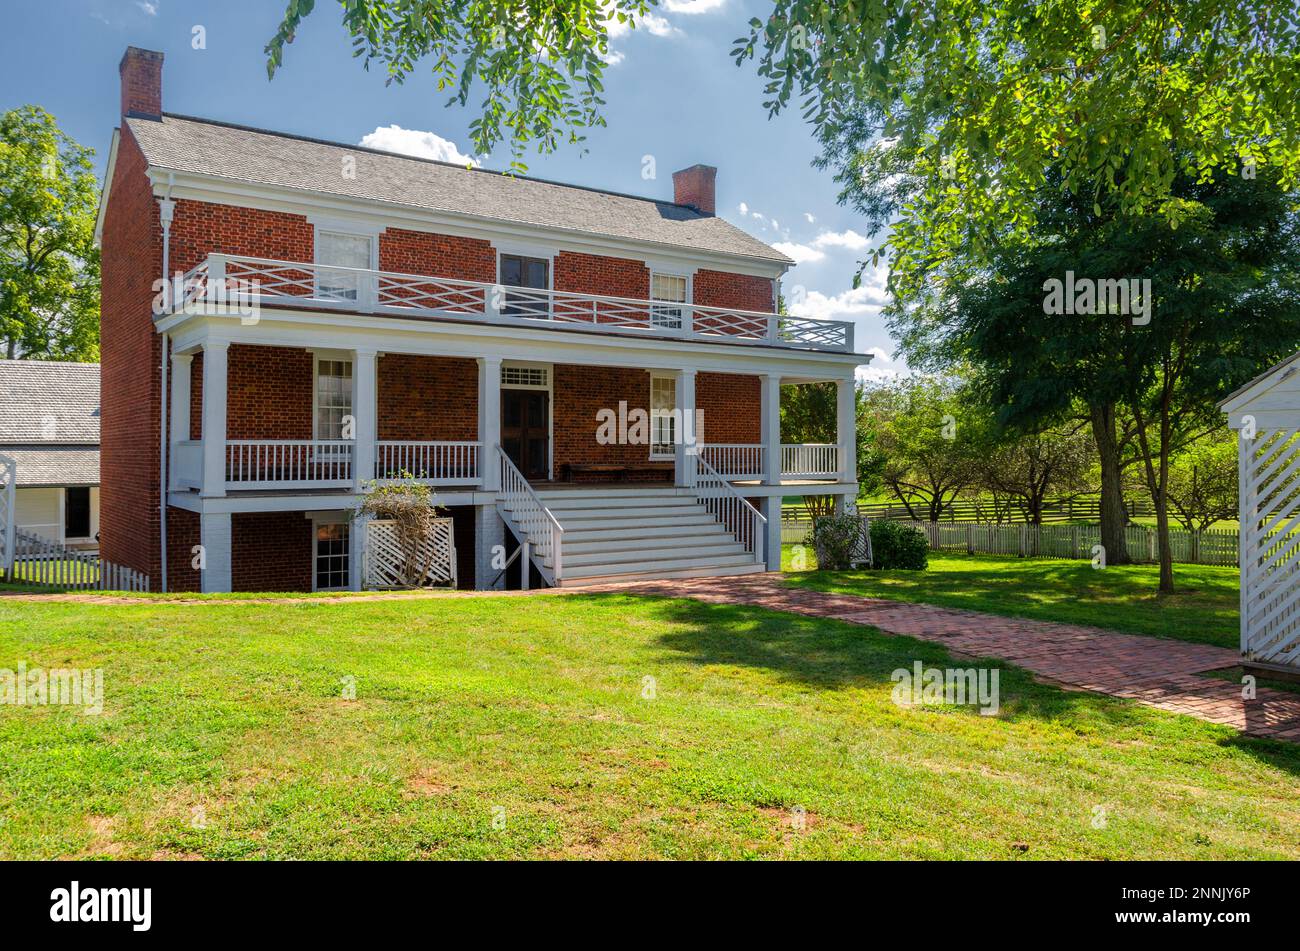 McLean House, lieu où le général Lee se rendit au général Grant, pour mettre fin à la guerre civile. Appomattox court House, Virginie Banque D'Images